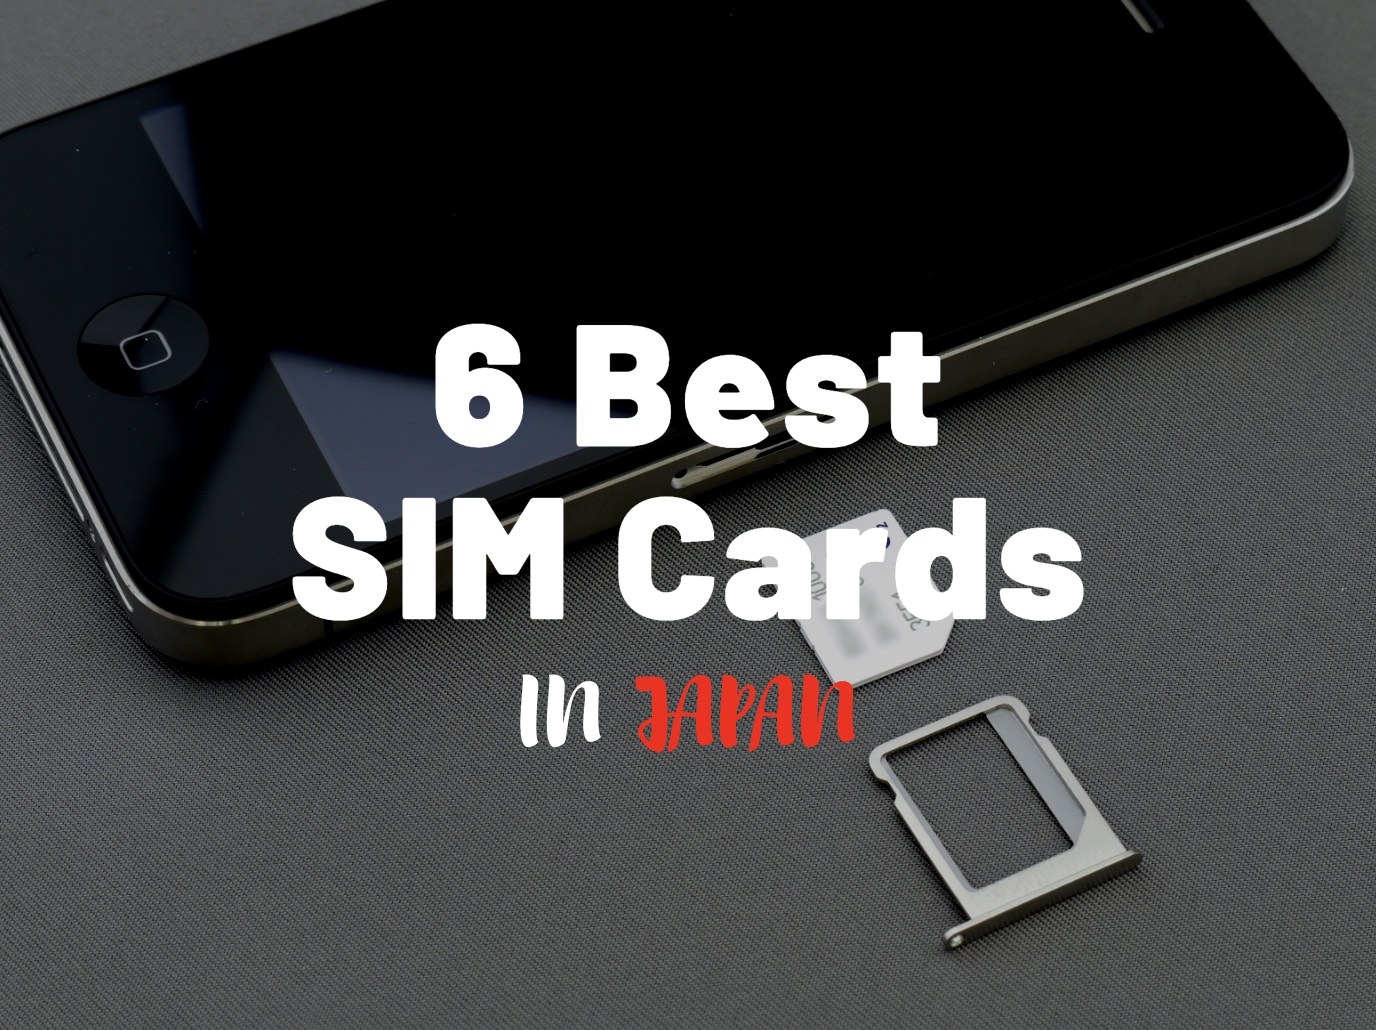 6 Best SIM Cards in Japan